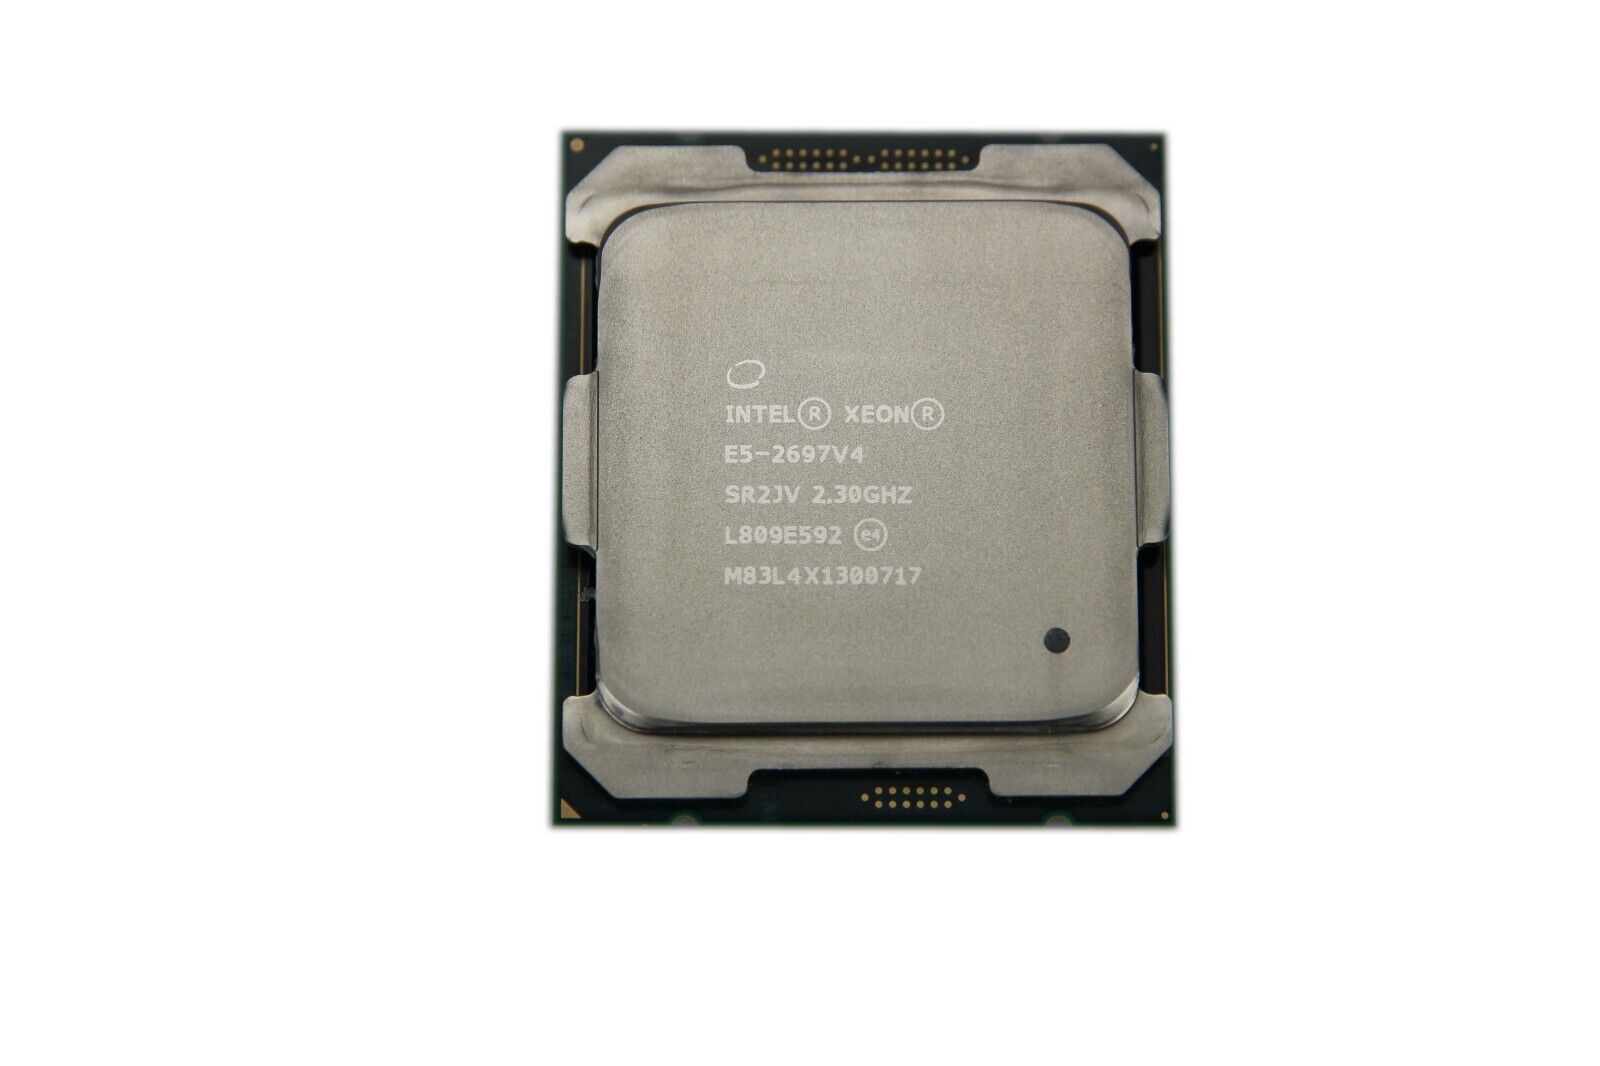 Intel Xeon E5-2697 v4 2.3GHz 45MB 18-Core 145W LGA2011-3 SR2JV